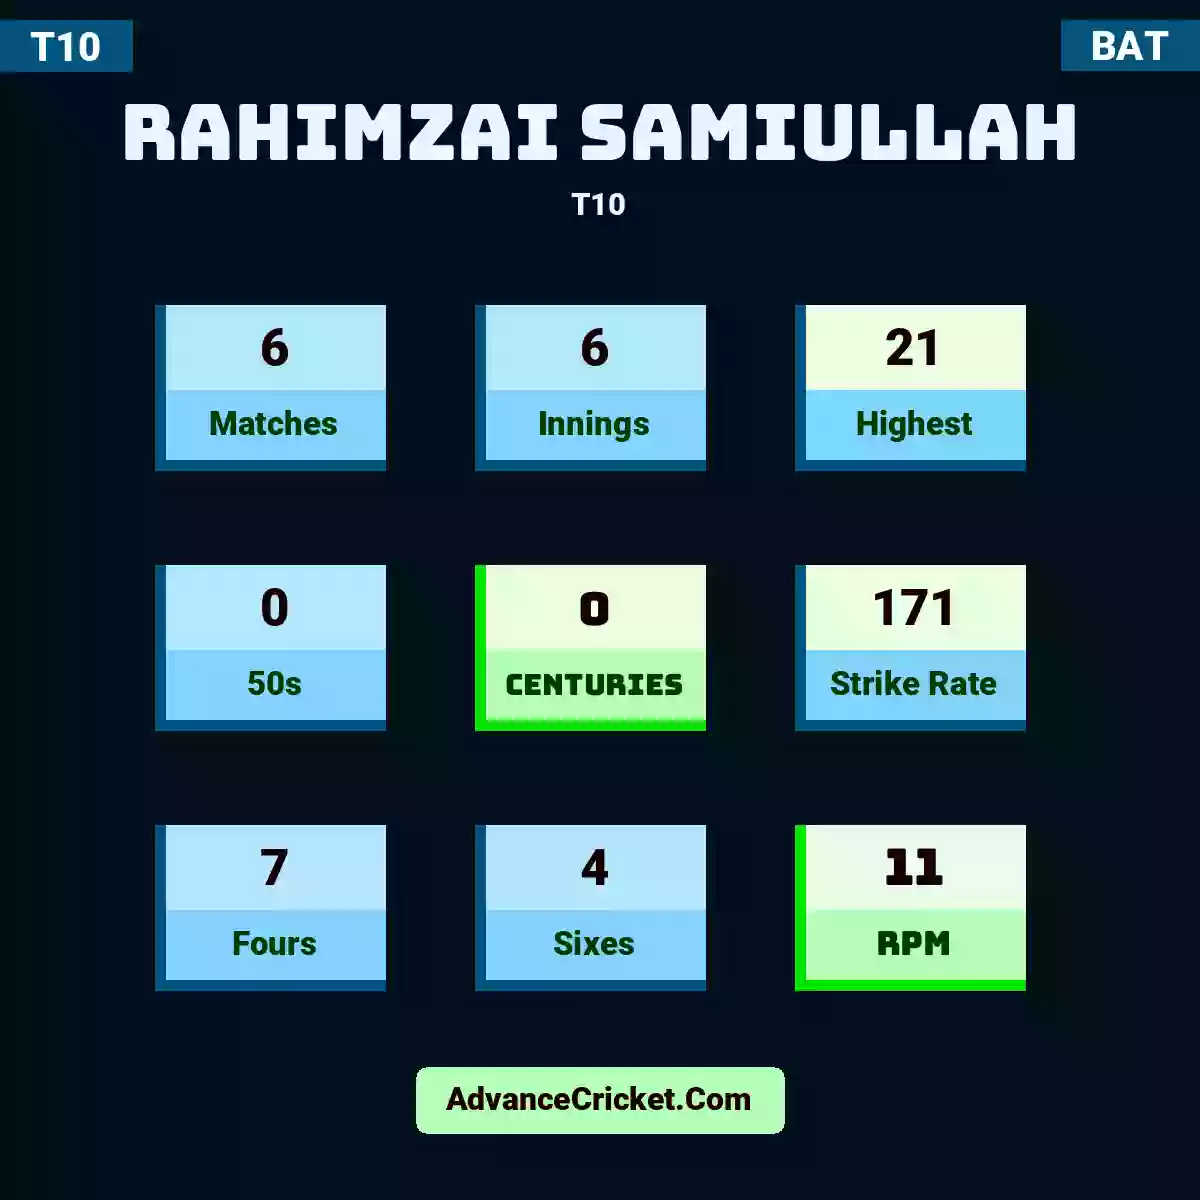 Rahimzai Samiullah T10 , Rahimzai Samiullah played 6 matches, scored 21 runs as highest, 0 half-centuries, and 0 centuries, with a strike rate of 171. R.Samiullah hit 7 fours and 4 sixes, with an RPM of 11.